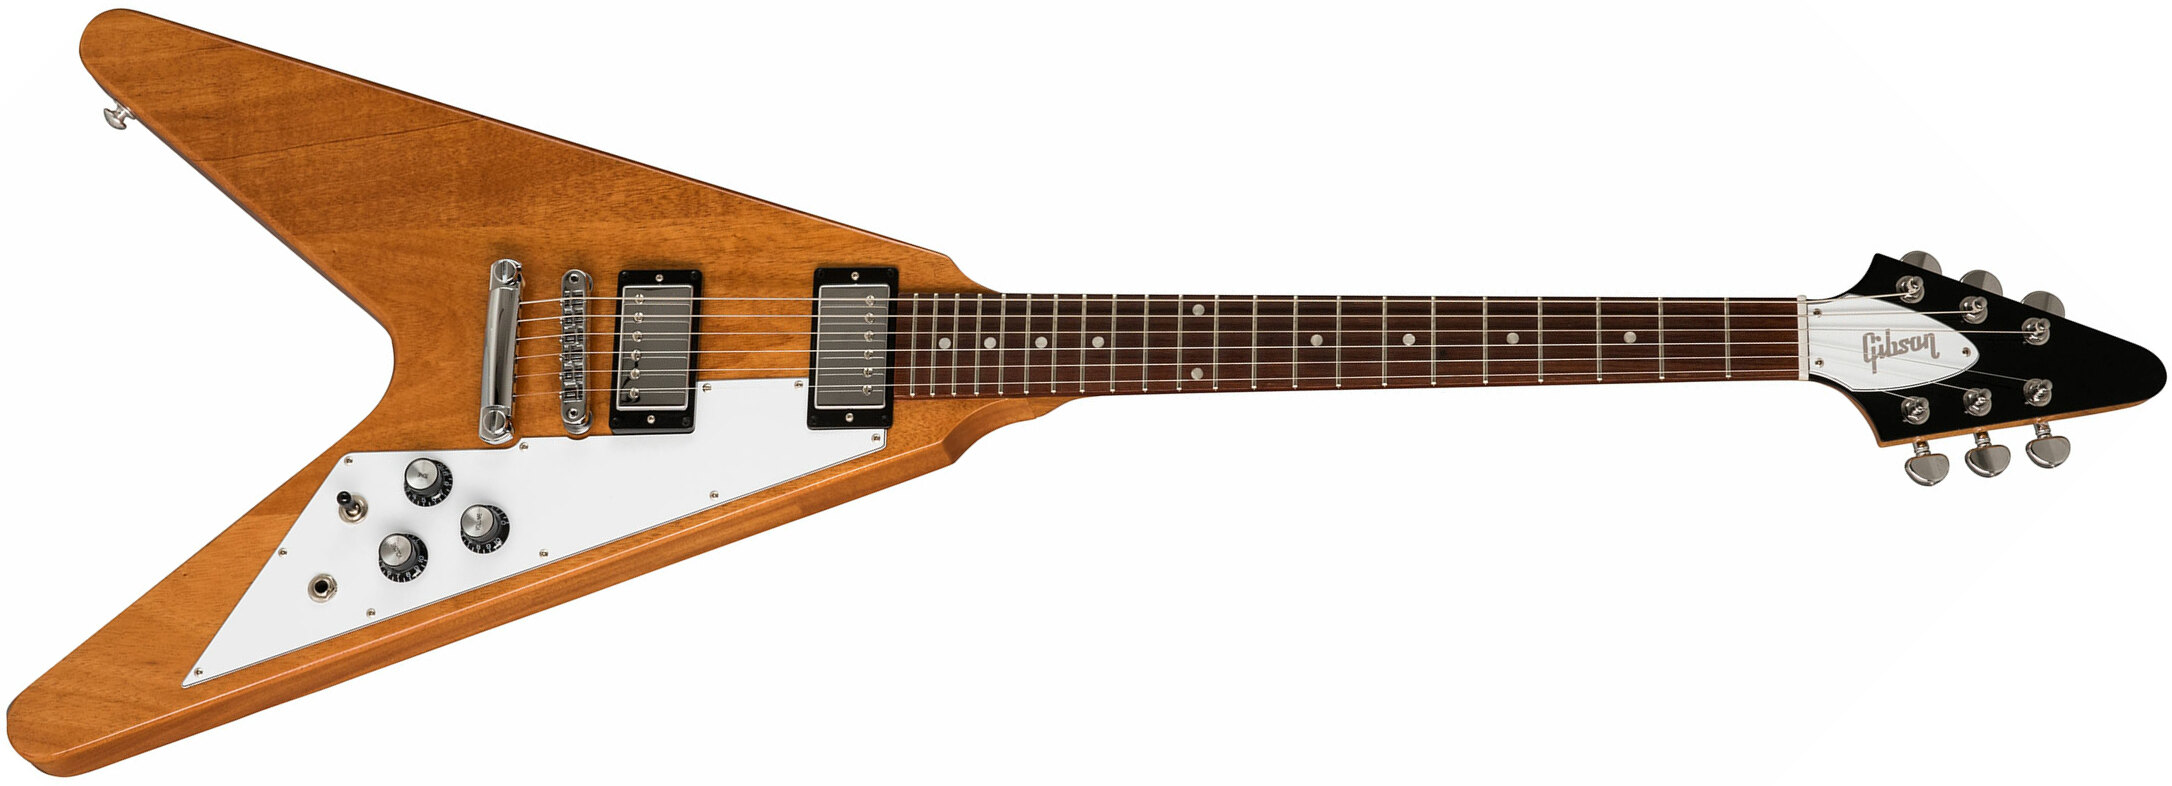 Gibson Flying V 2019 Hh Ht Rw - Antique Natural - Metalen elektrische gitaar - Main picture